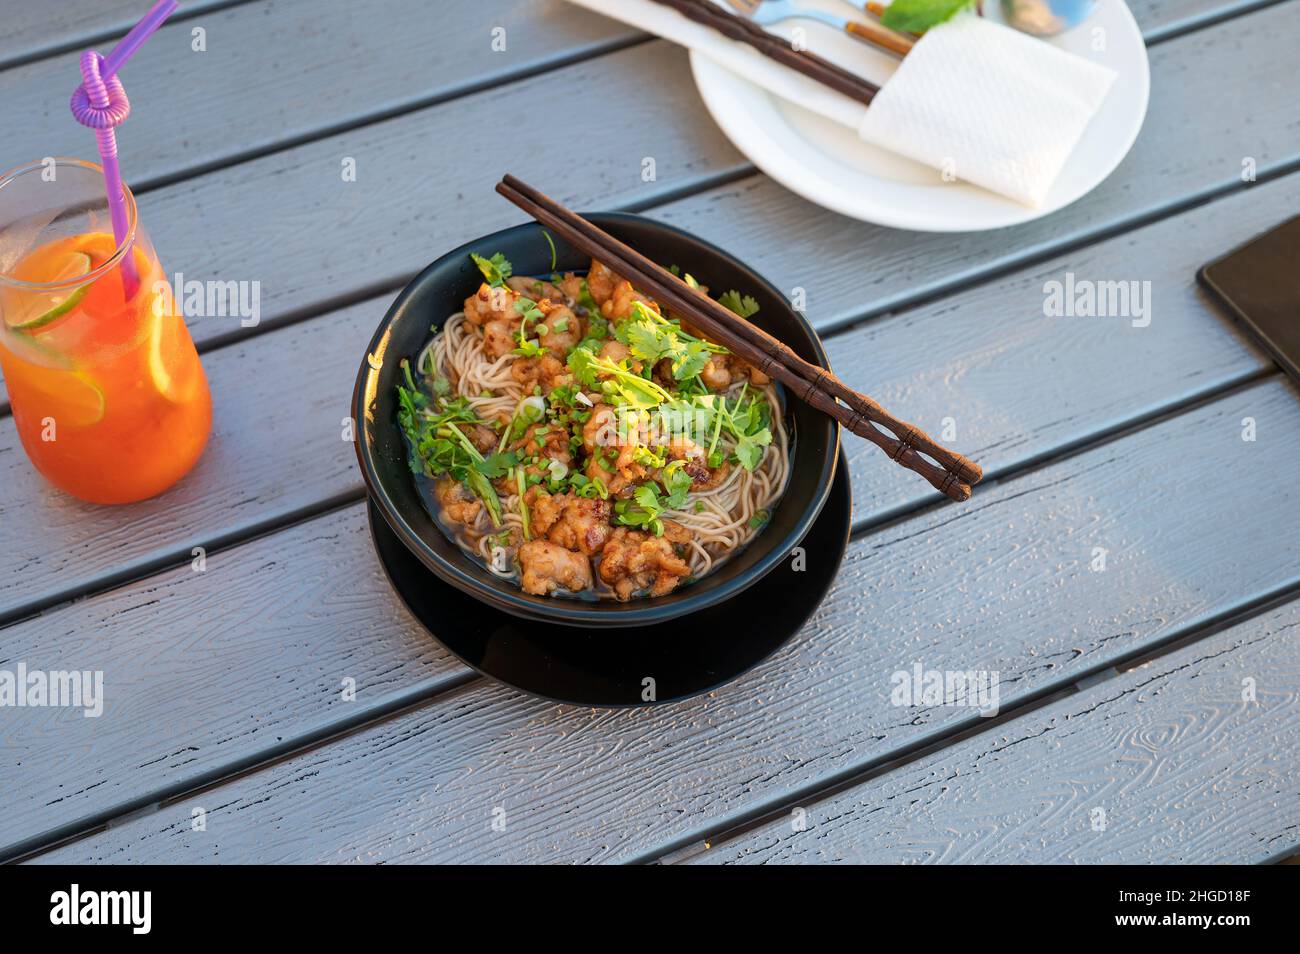 Nouilles de soupe asiatique avec poulet et légumes servis sur une table.Restaurant chinois avec espace copie Banque D'Images